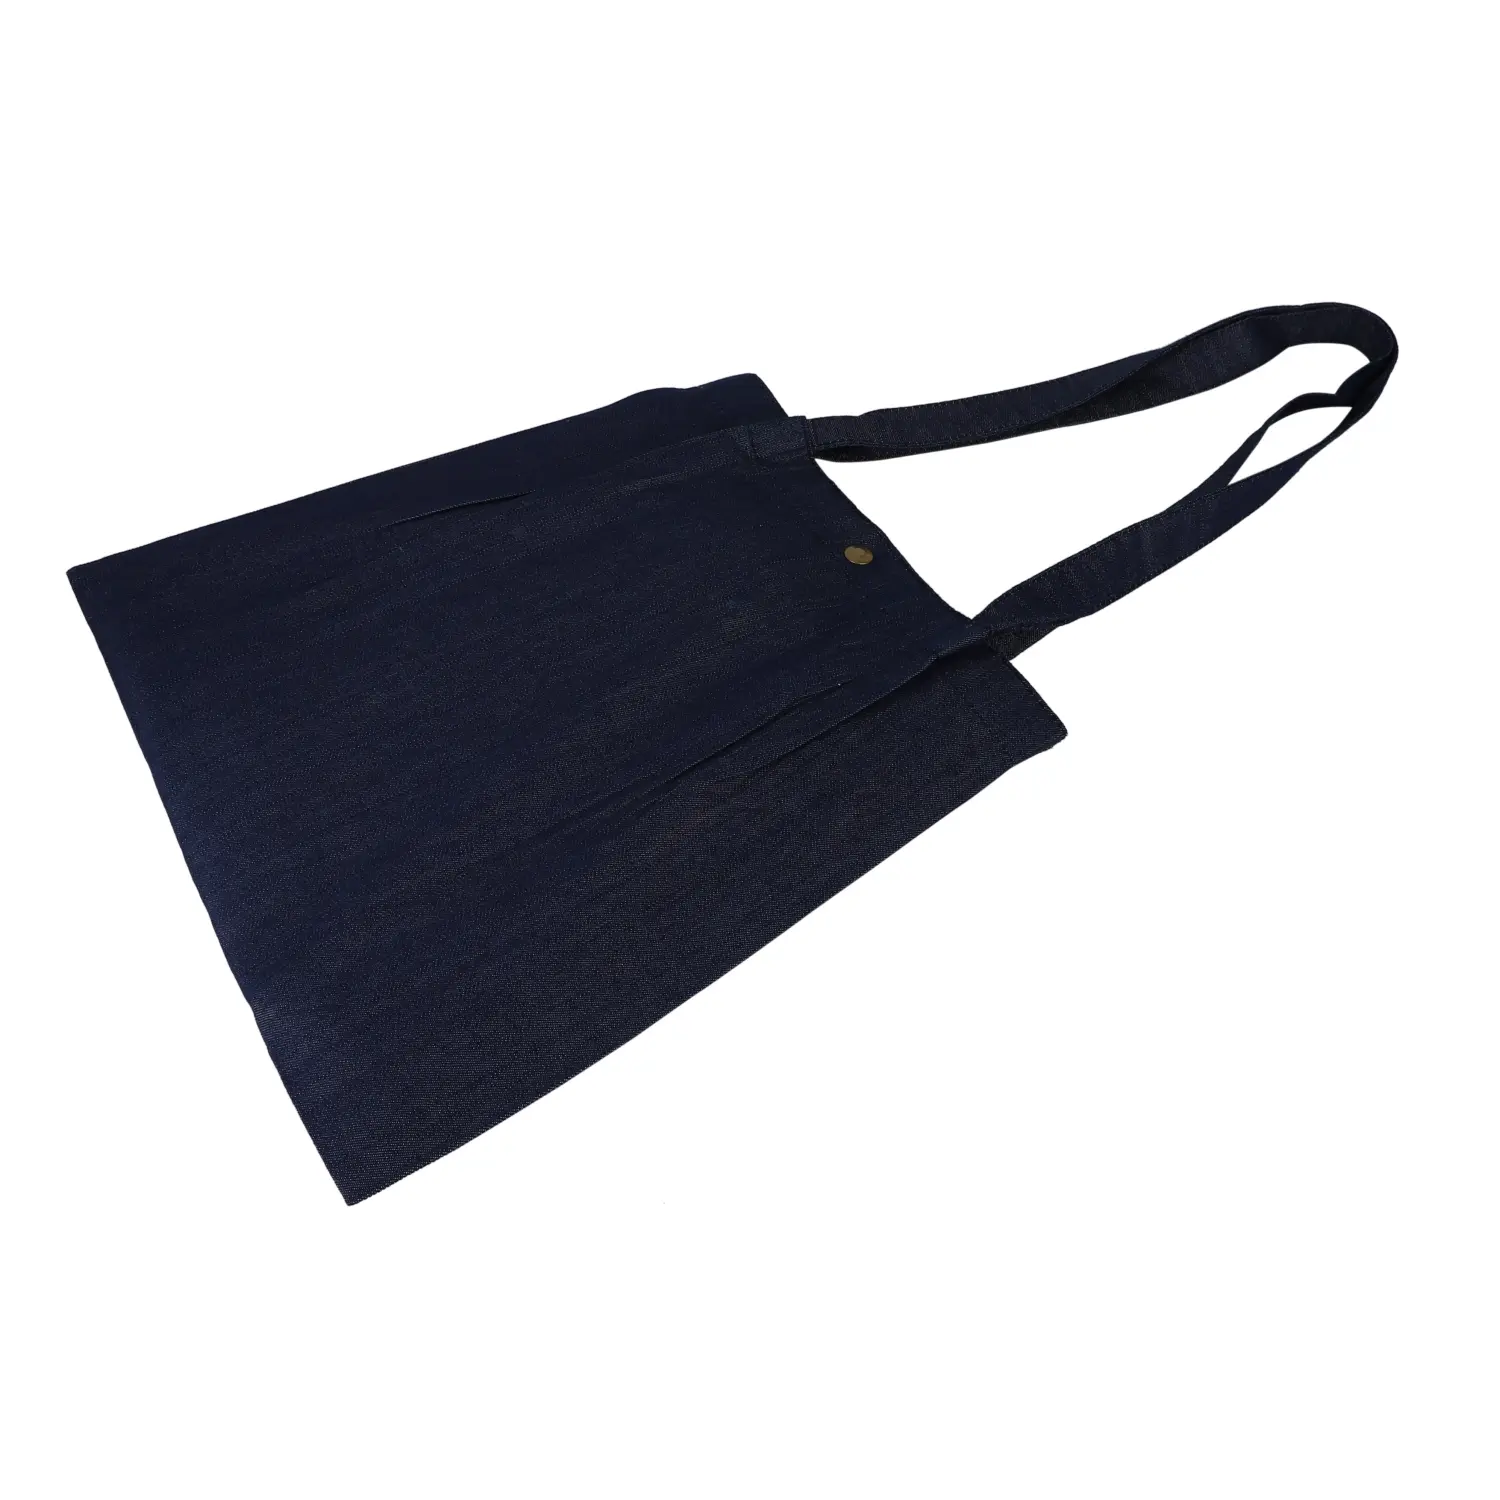 Denim Tote Bag Shopping Bag Promotional Bag Conference Bag Institutional bag-02